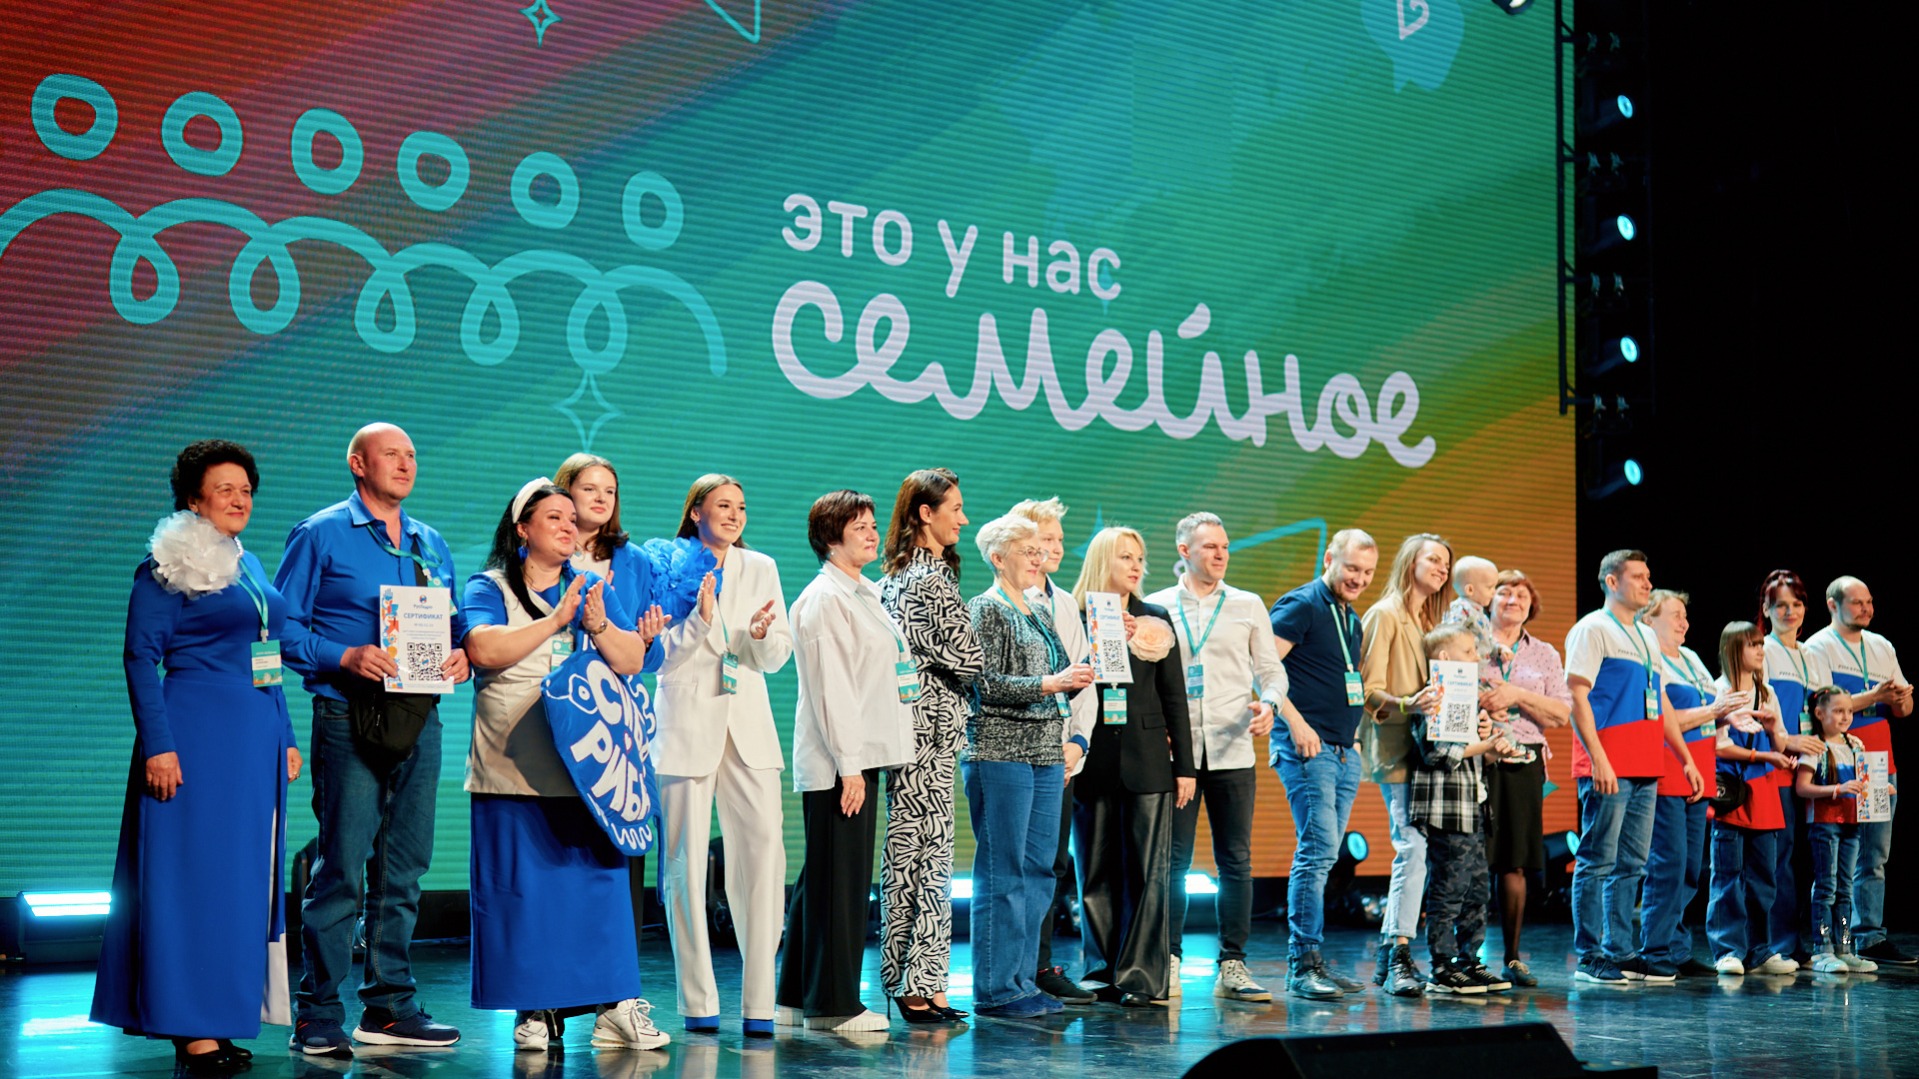 34 семьи из Сибирского федерального округа победили в полуфинале конкурса «Это у нас семейное»